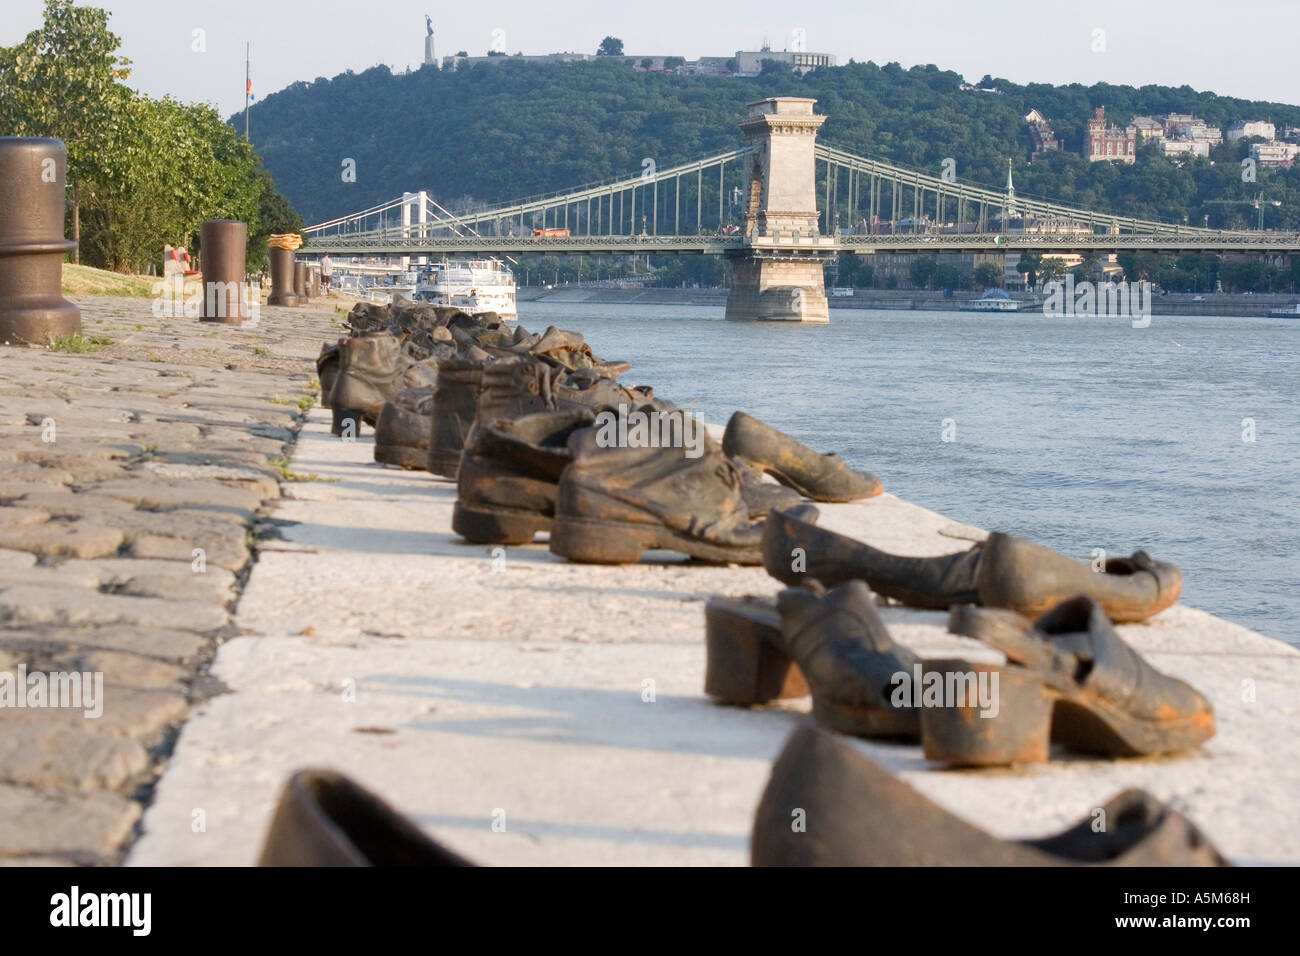 Schuhe auf dem Ufer der Donau in Budapest mit der Brücke im Hintergrund  Stockfotografie - Alamy